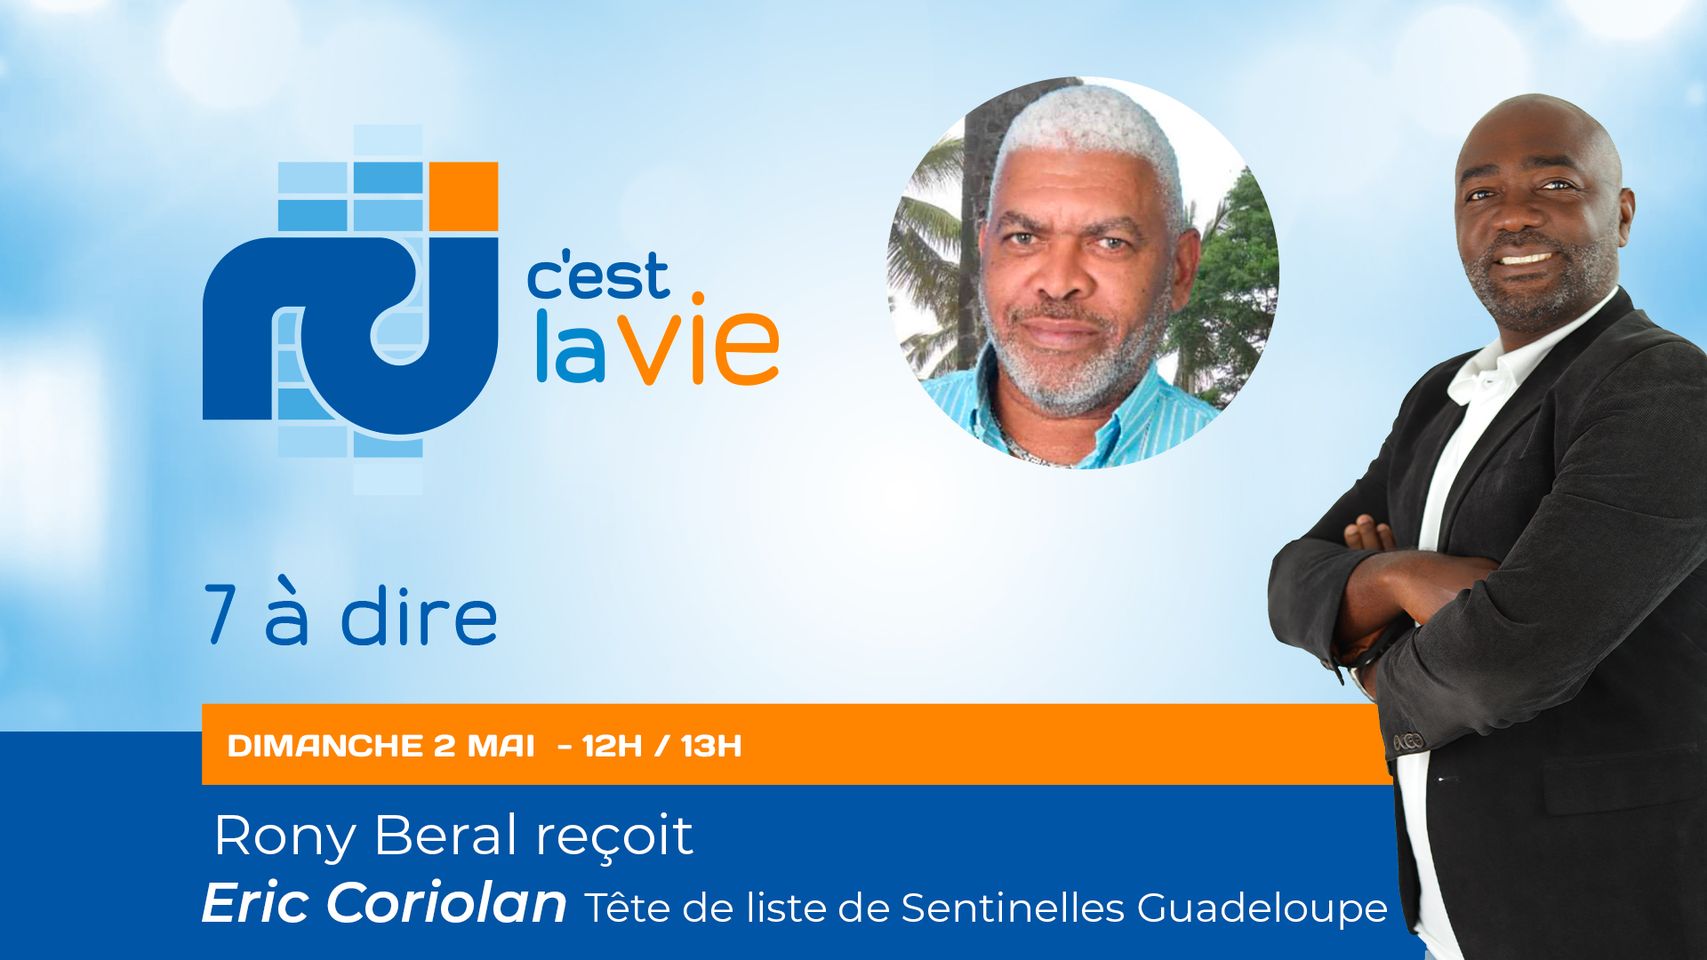     [LIVE] Eric Coriolan, tête de liste du mouvement Sentinelles Guadeloupe, est l'invité de 7 à dire

